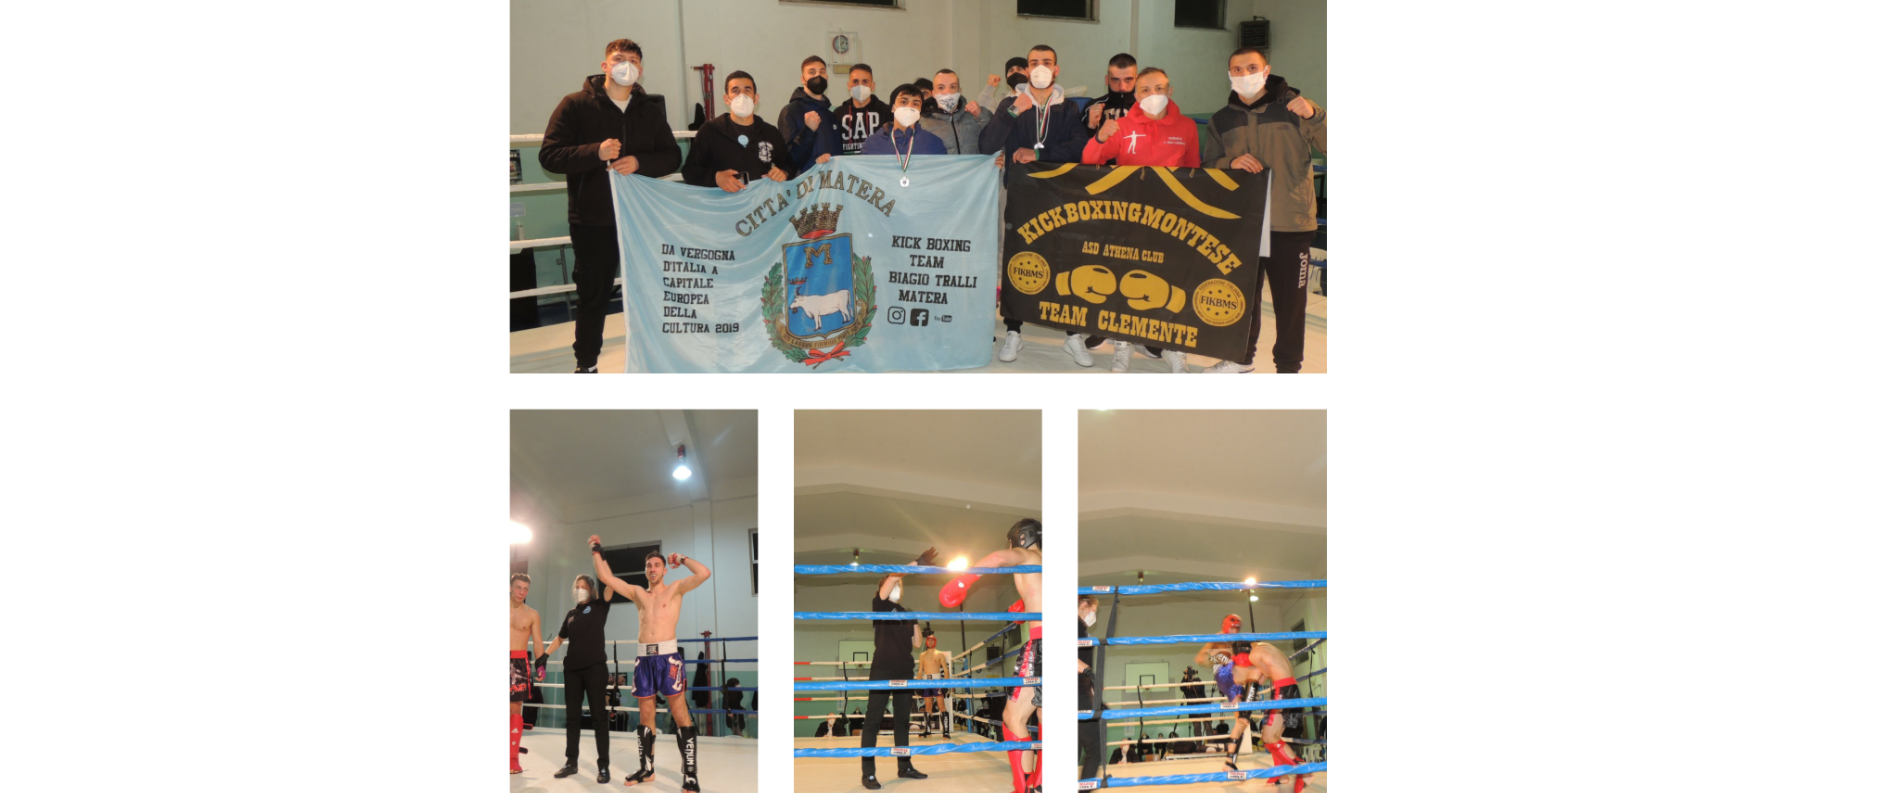 Galà Borgo Fight V di kickboxing, en plein per i fighters lucani